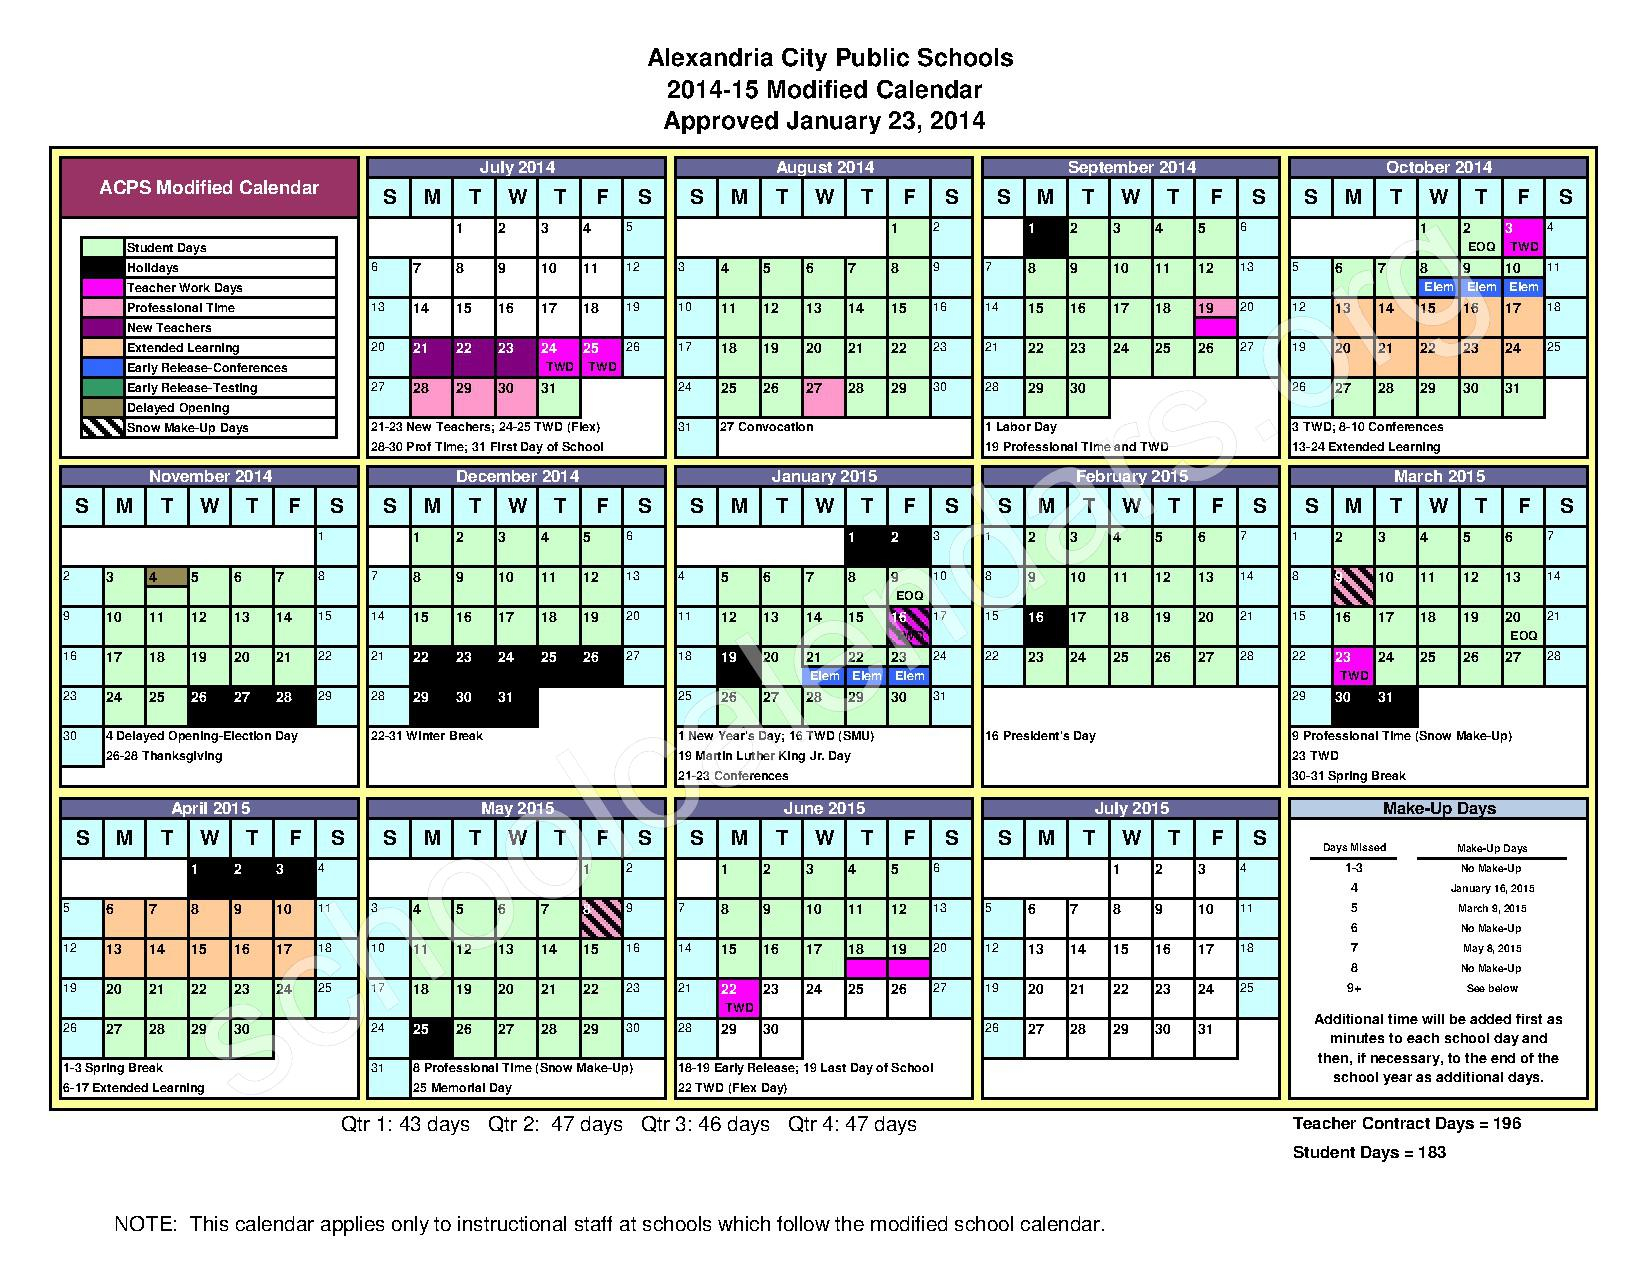 Alexandria Public Schools Calendar 2023 Schoolcalendars